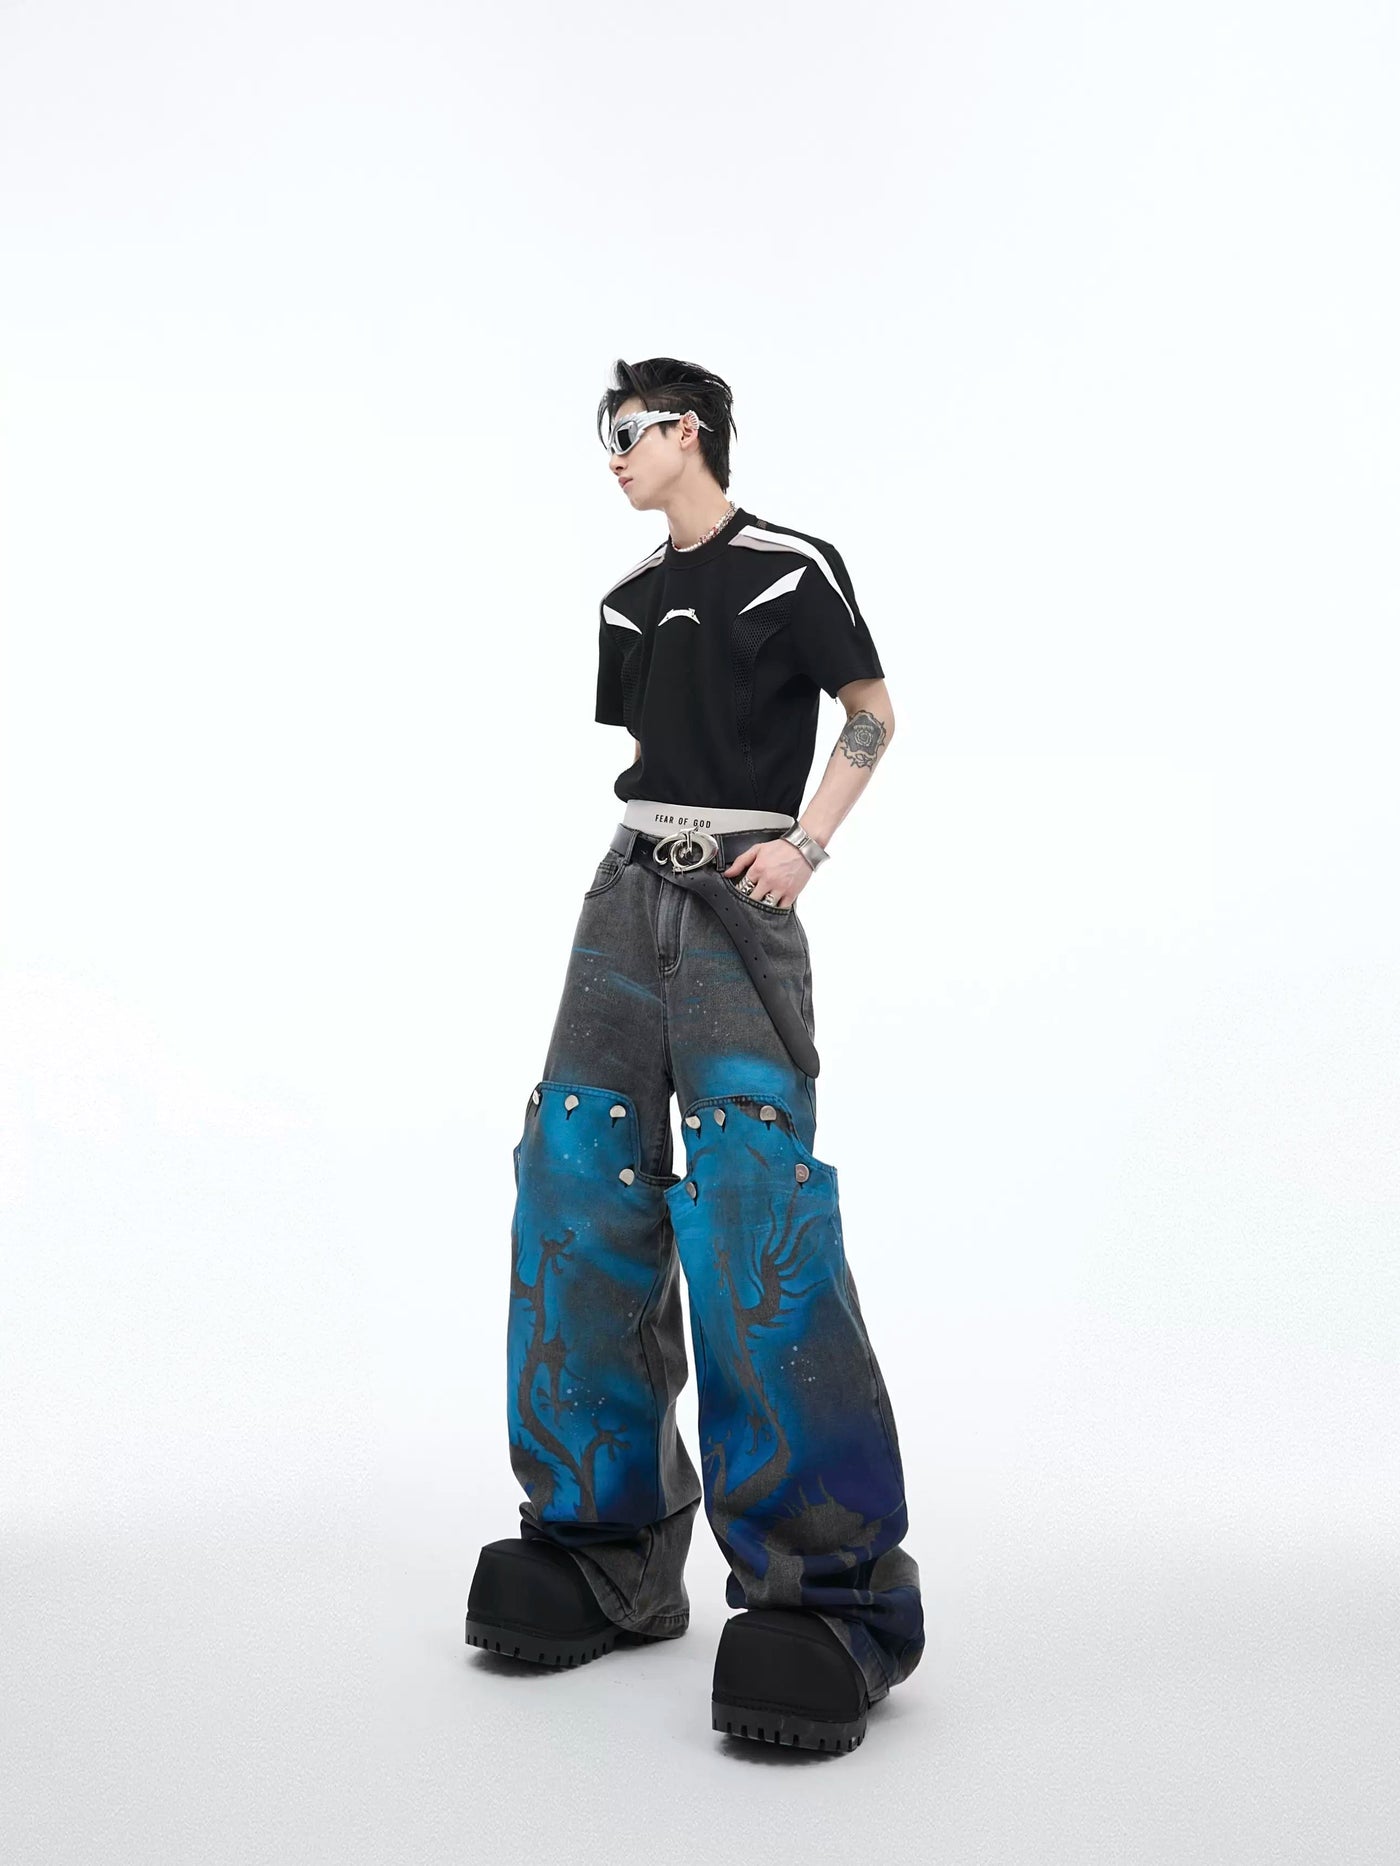 Color Paint Dragon Jeans Korean Street Fashion Jeans By Argue Culture Shop Online at OH Vault